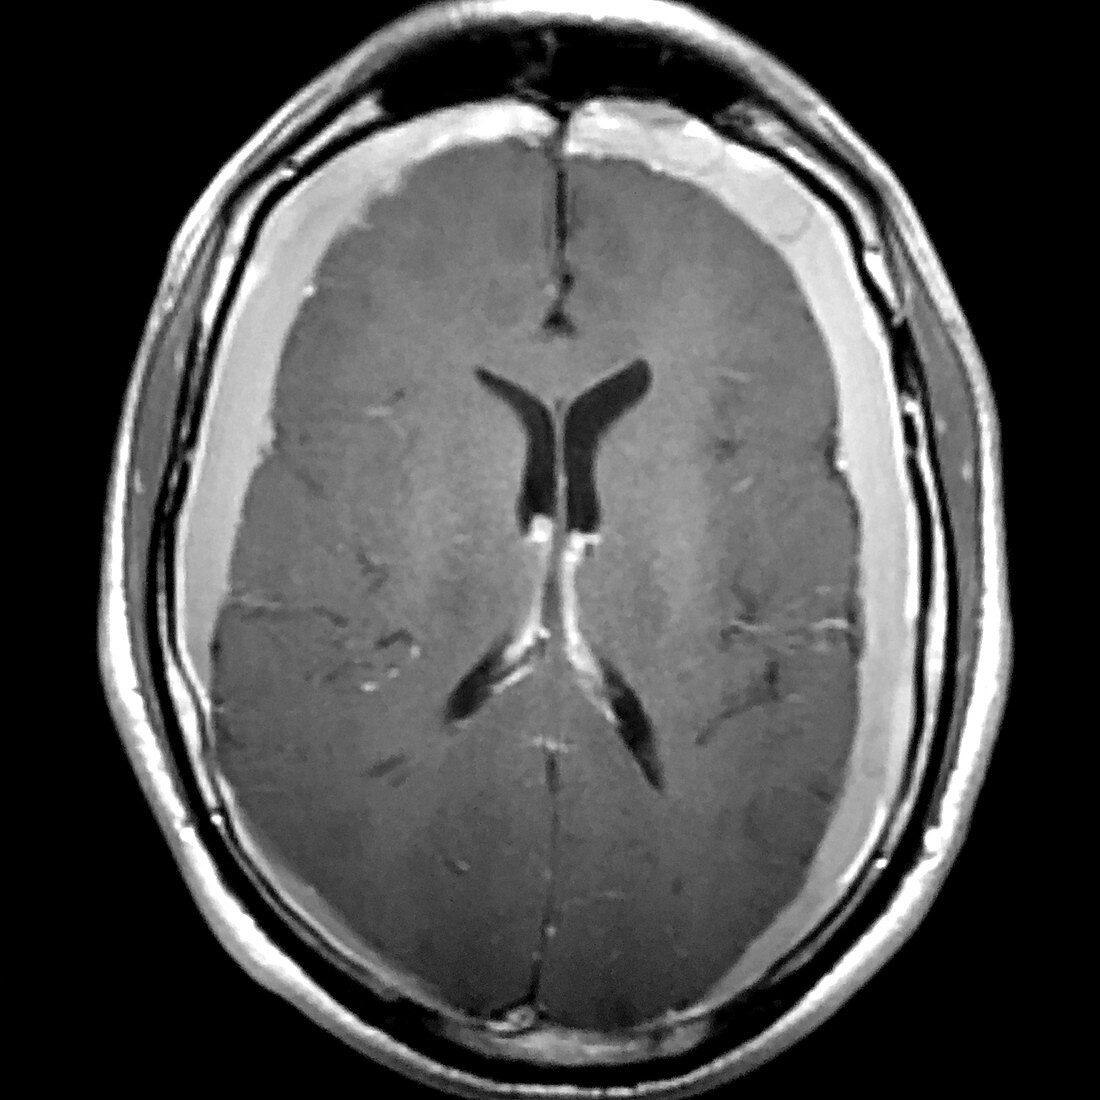 Bilateral Subdural Hematomas, MRI